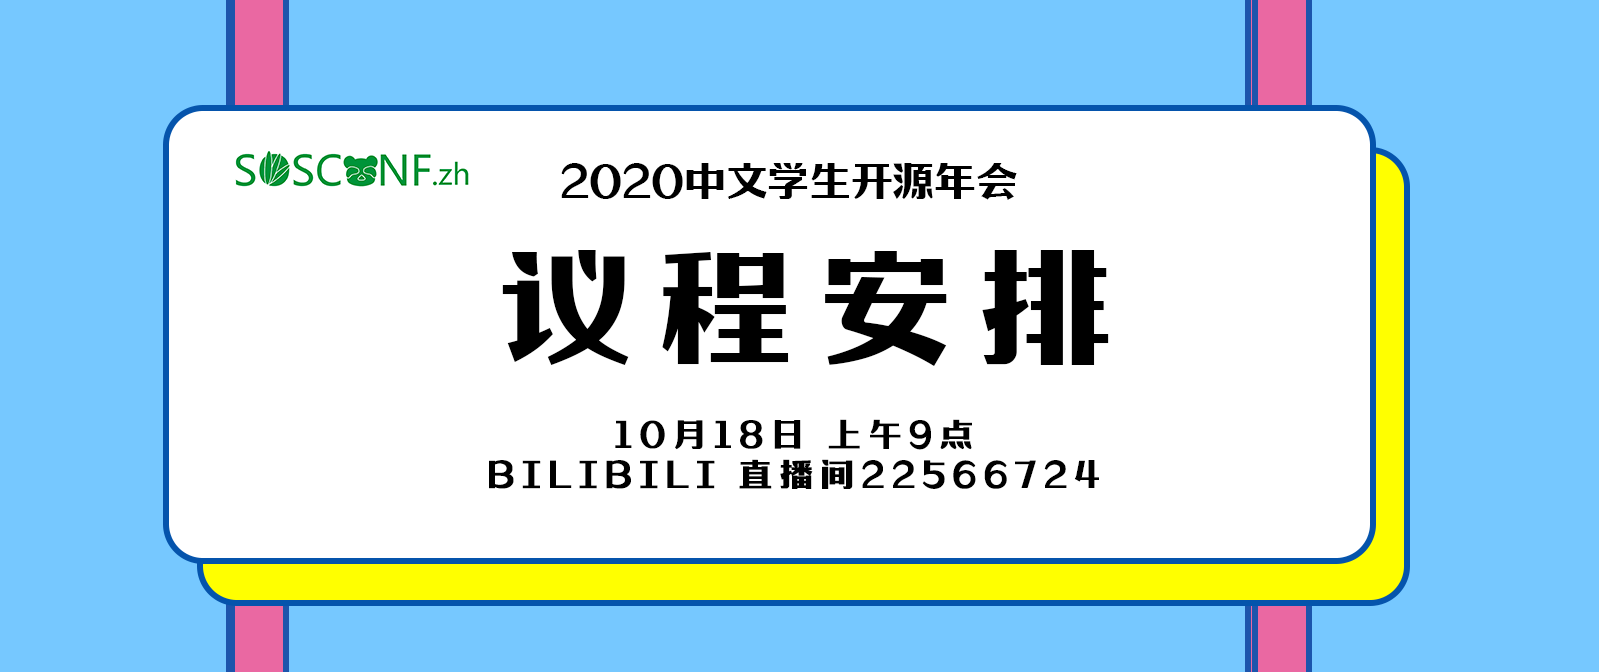 2020中文学生开源年会议程安排正式公布！